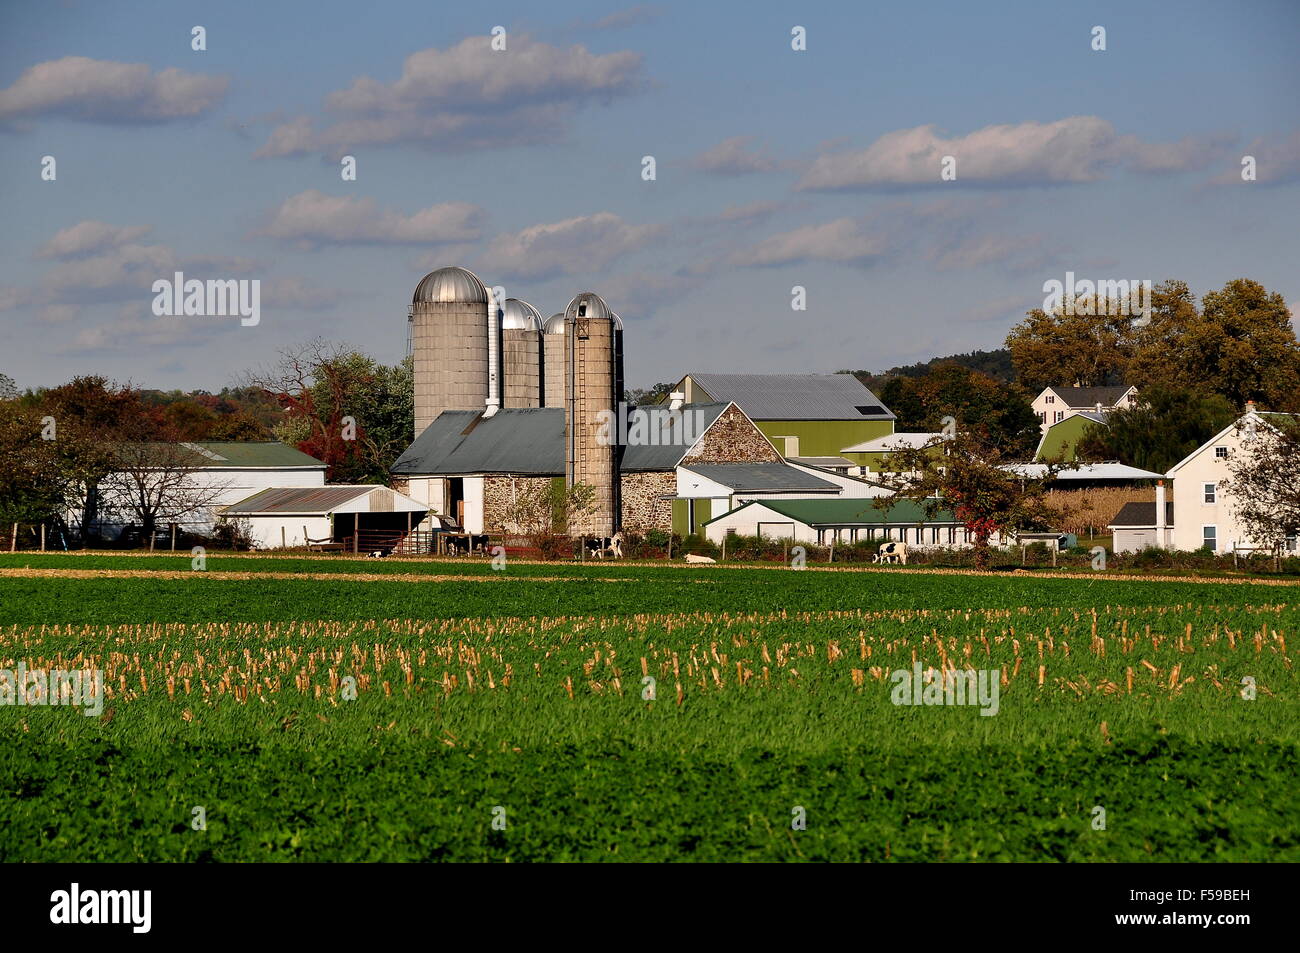 Lancaster County, Pennsylvania: fattoria Amish complesso con casa colonica, granai e silos Foto Stock